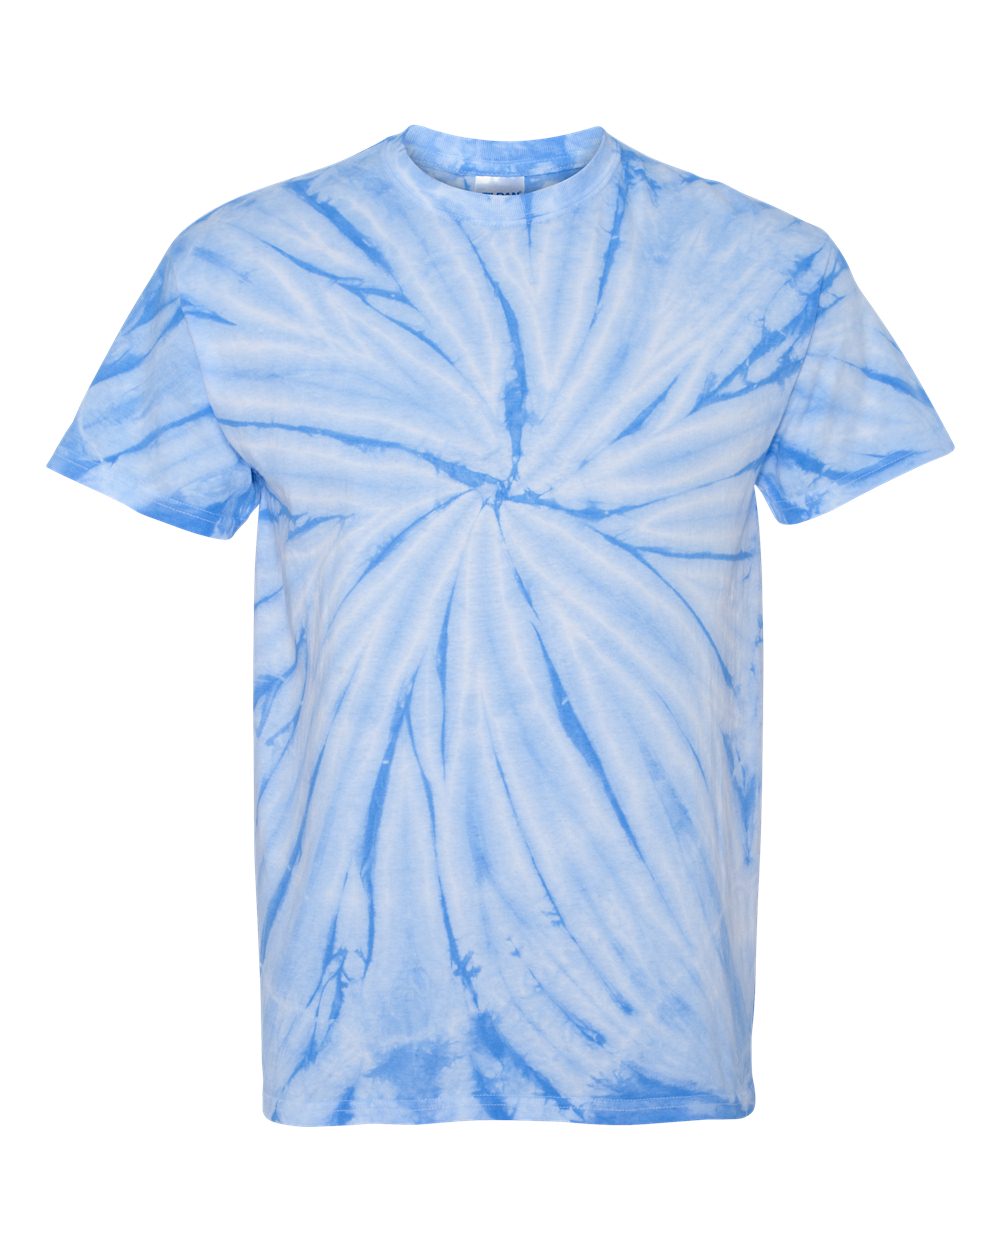 Stillwater Design 2 Tie Dye t-shirt